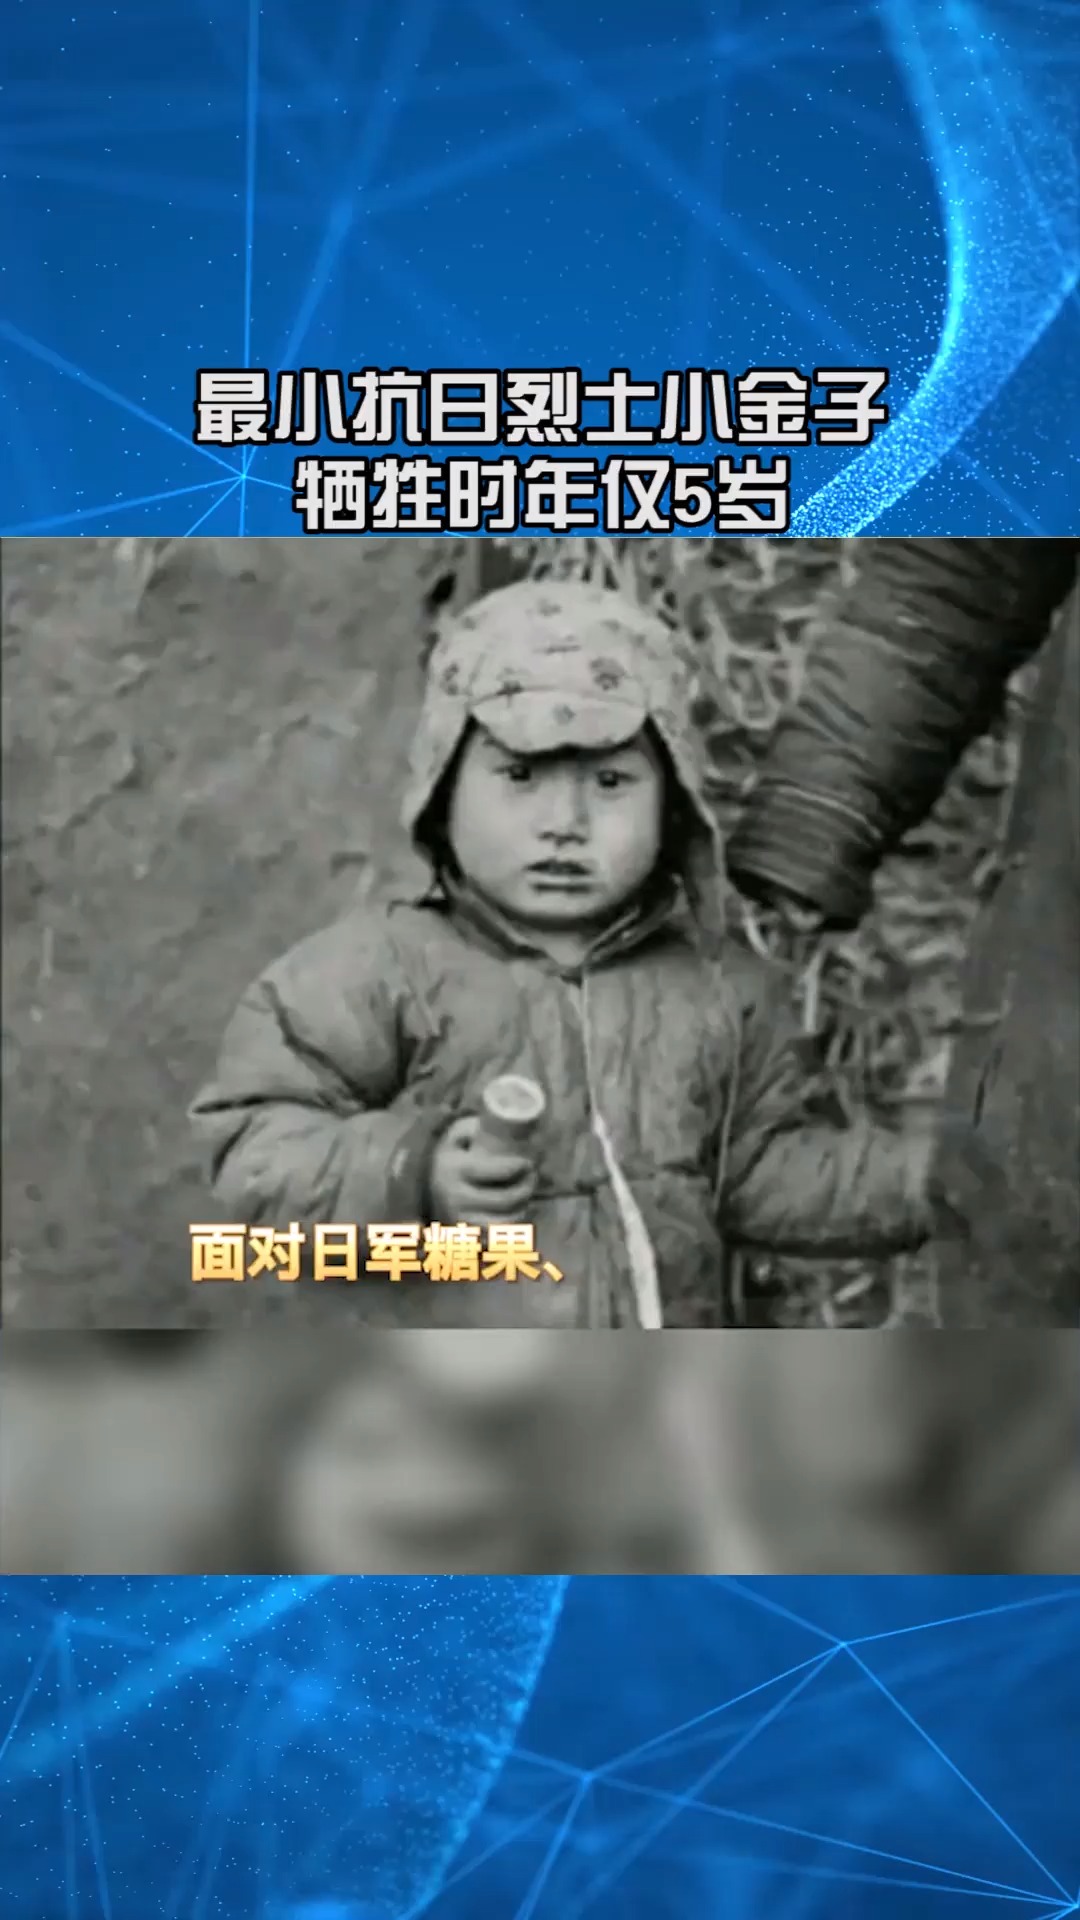 中国年纪最小抗日英雄小金子牺牲前说妈妈抱紧我我不怕